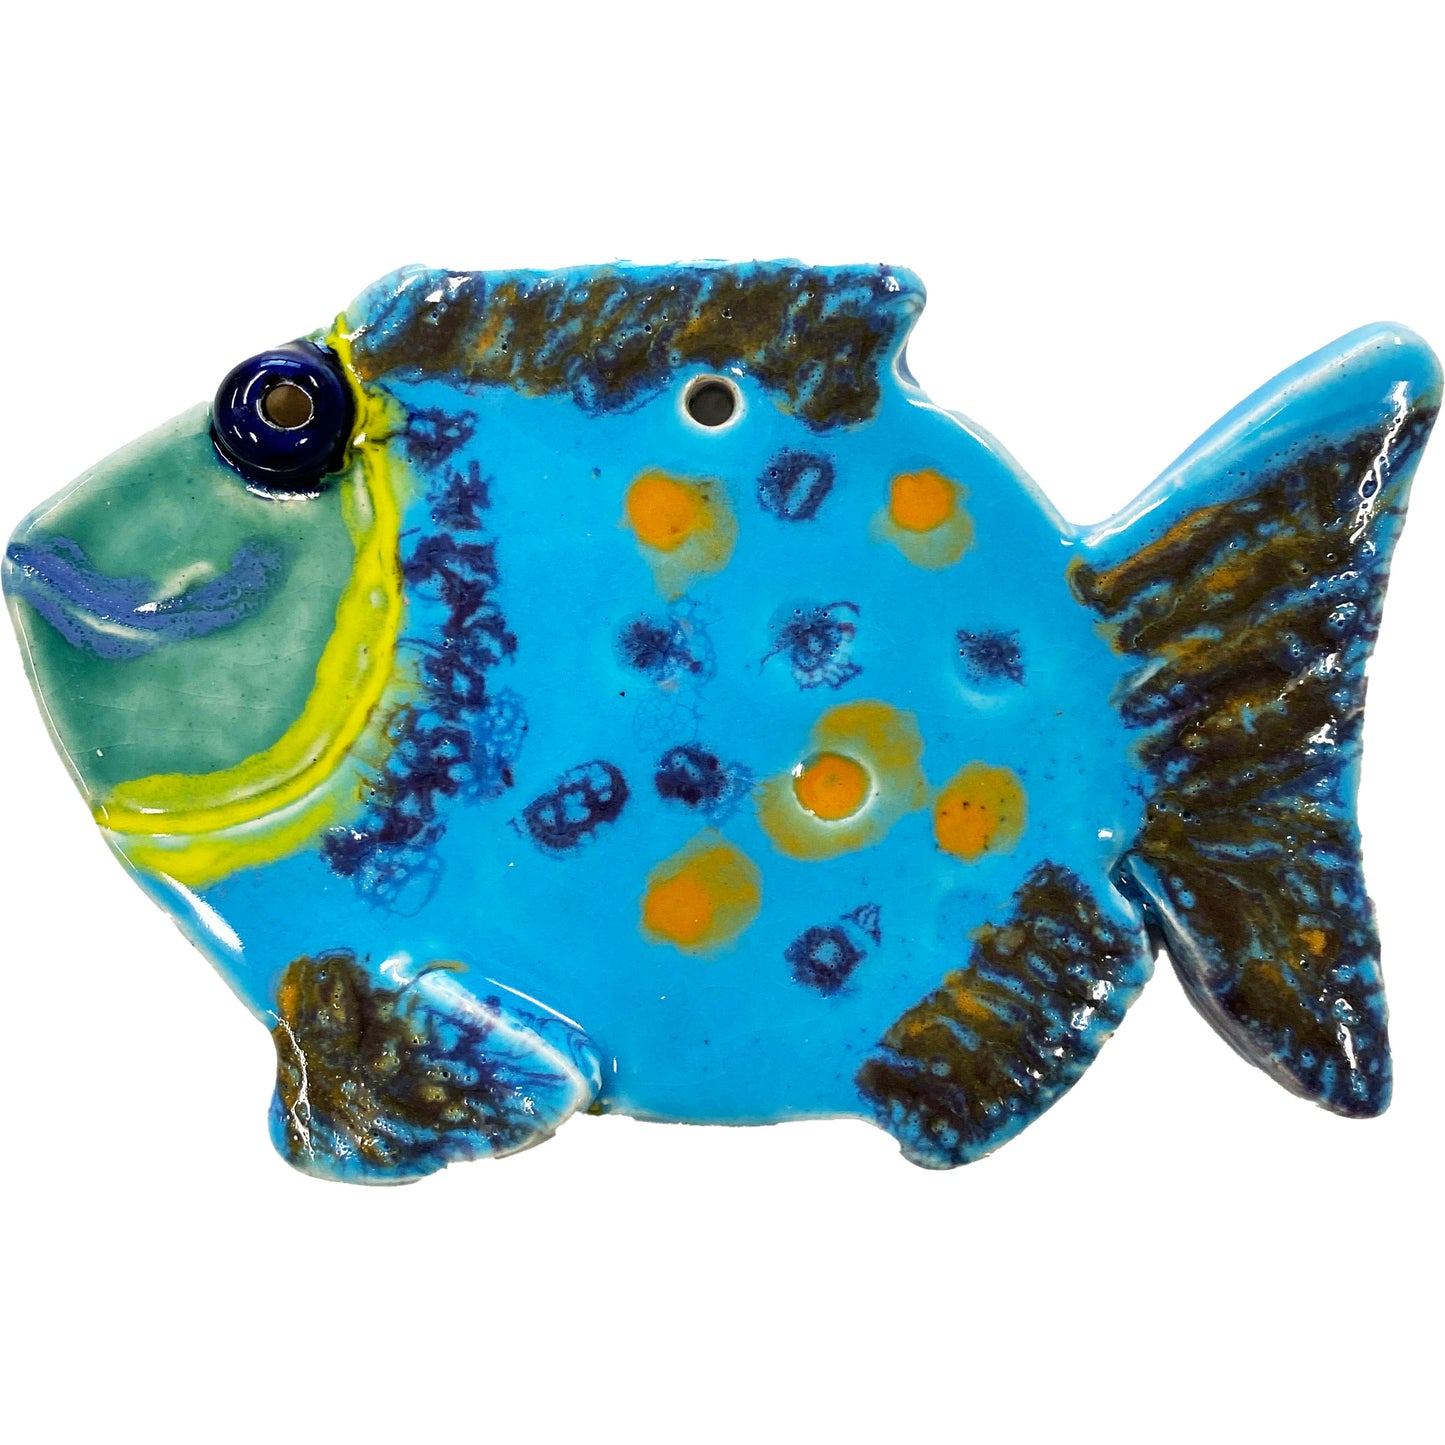 Ceramic Arts Handmade Clay Crafts Fresh Fish Glazed 6.5-inch x 4-inch by Patty Farley